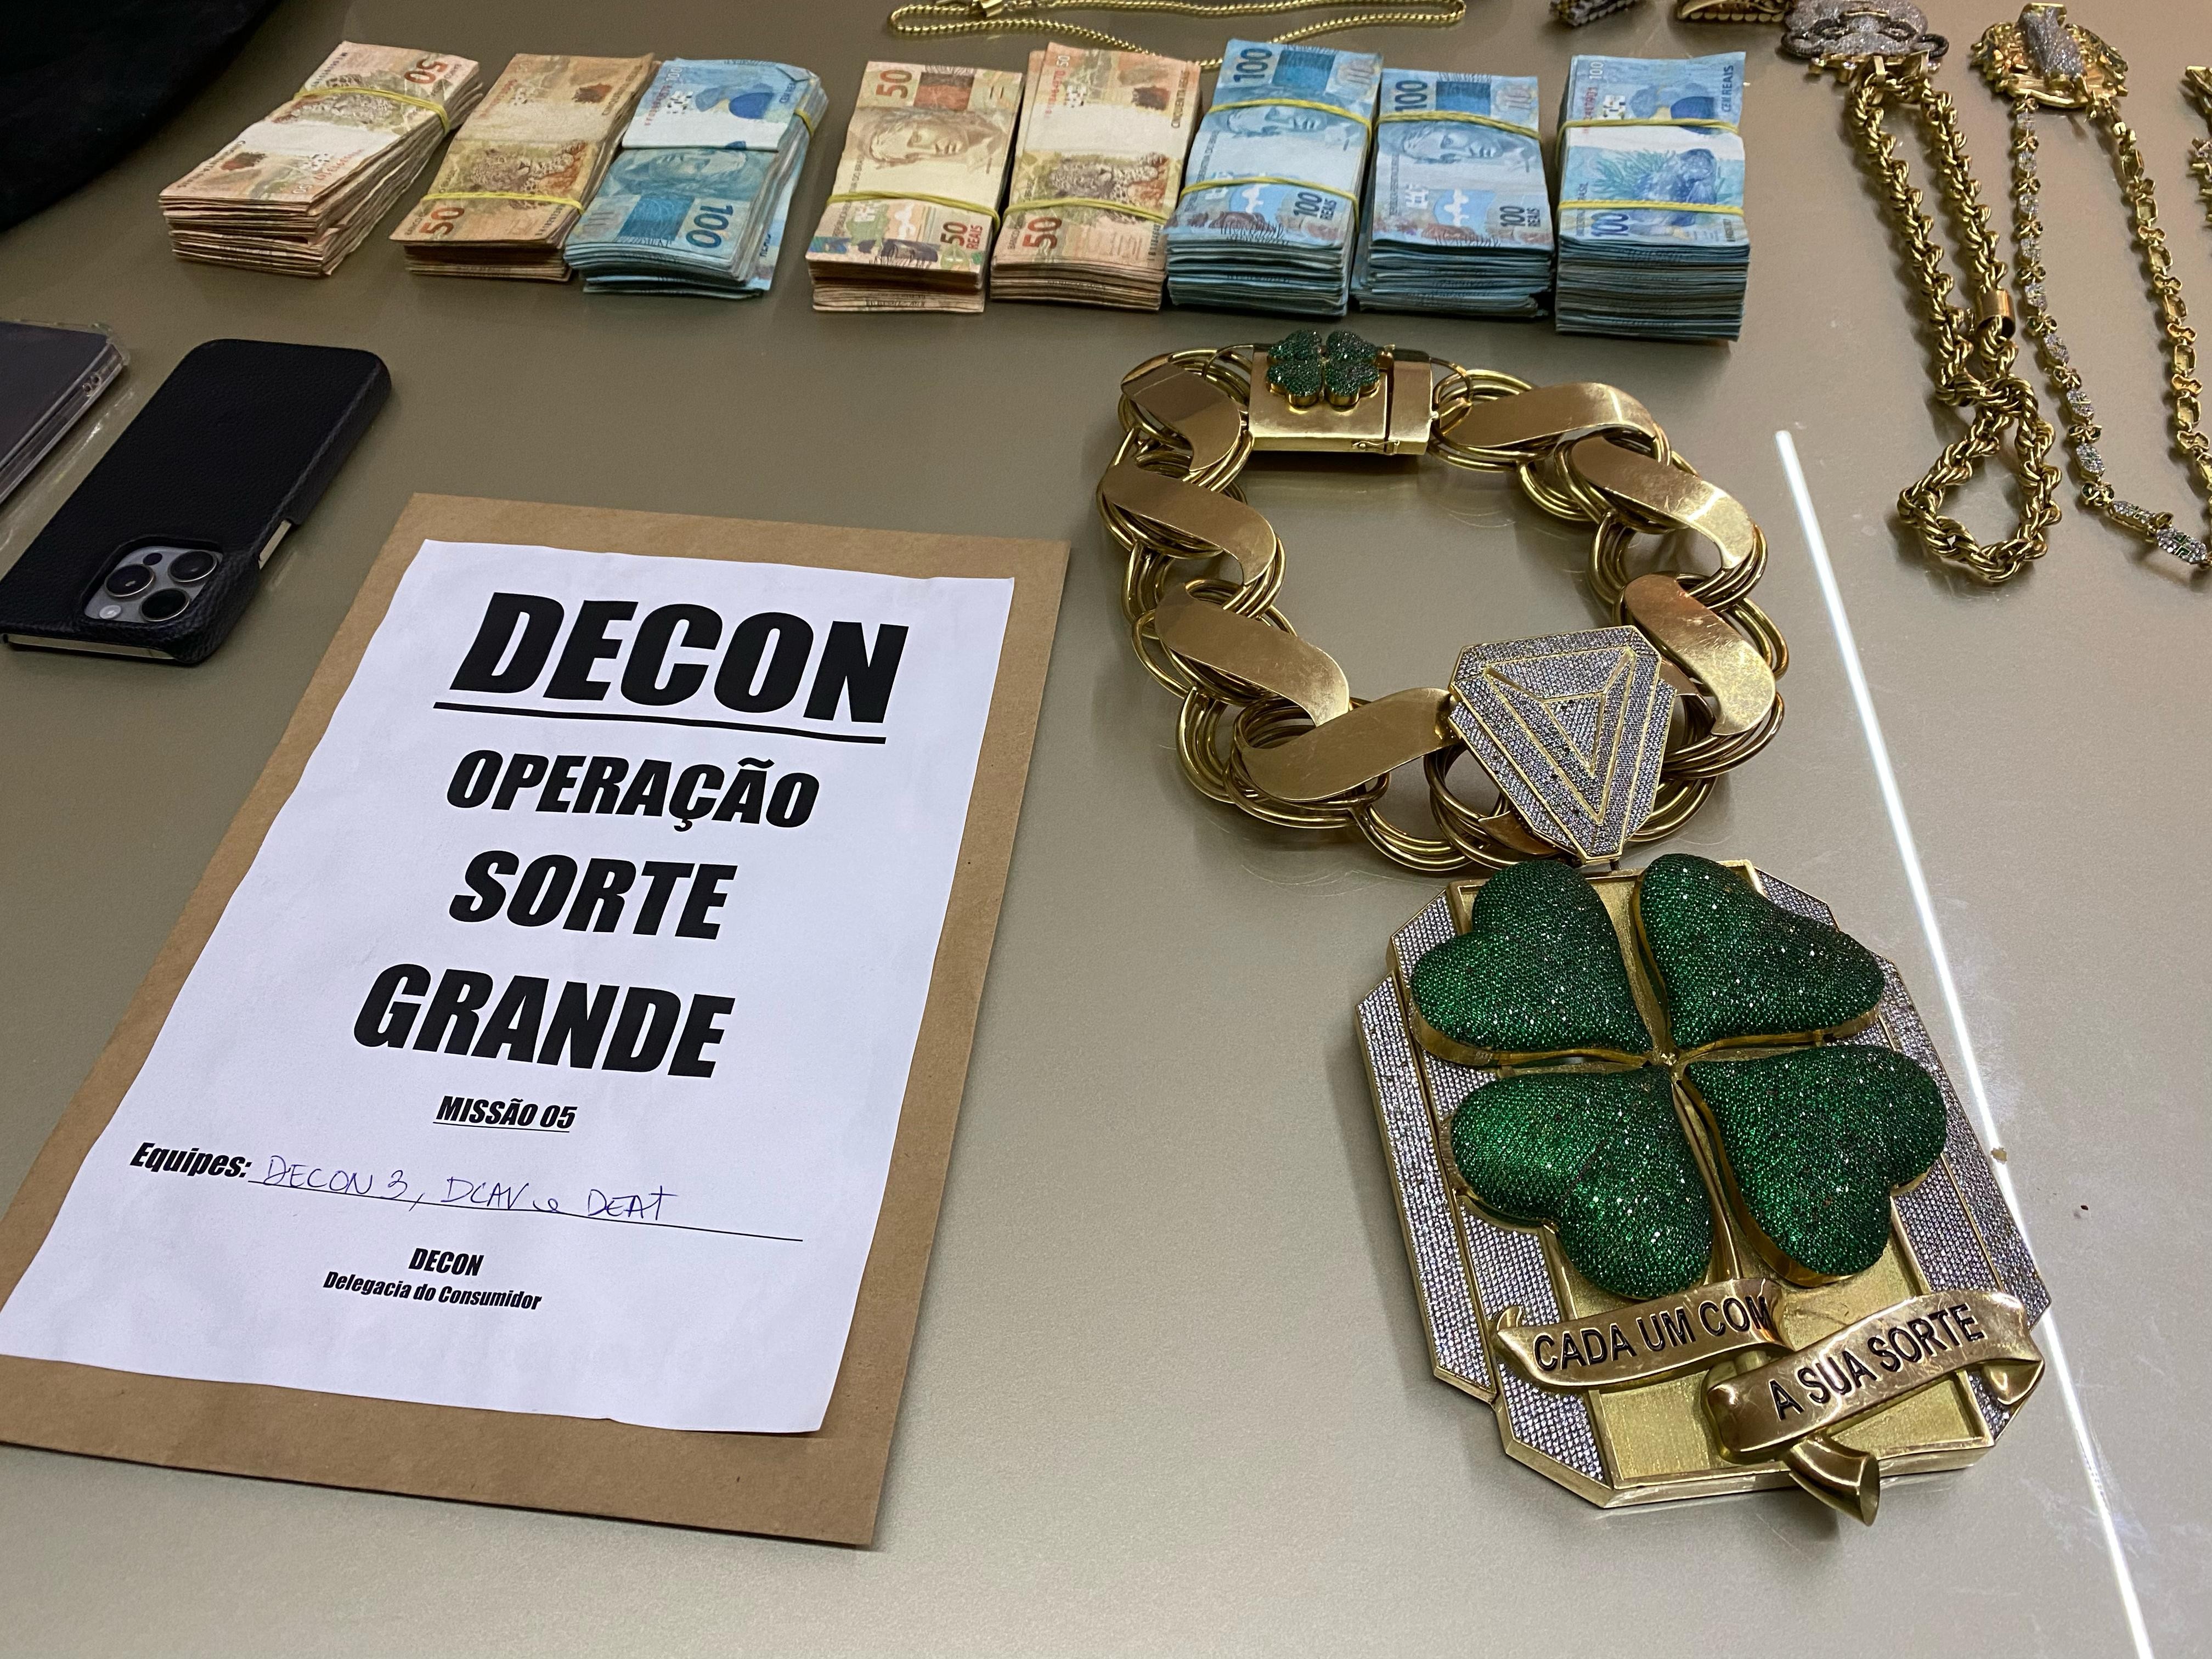 Cordão com 1,5 kg de ouro, diamantes e dinheiro 'cinematográfico': veja apreensão de operação contra rifa ilegal